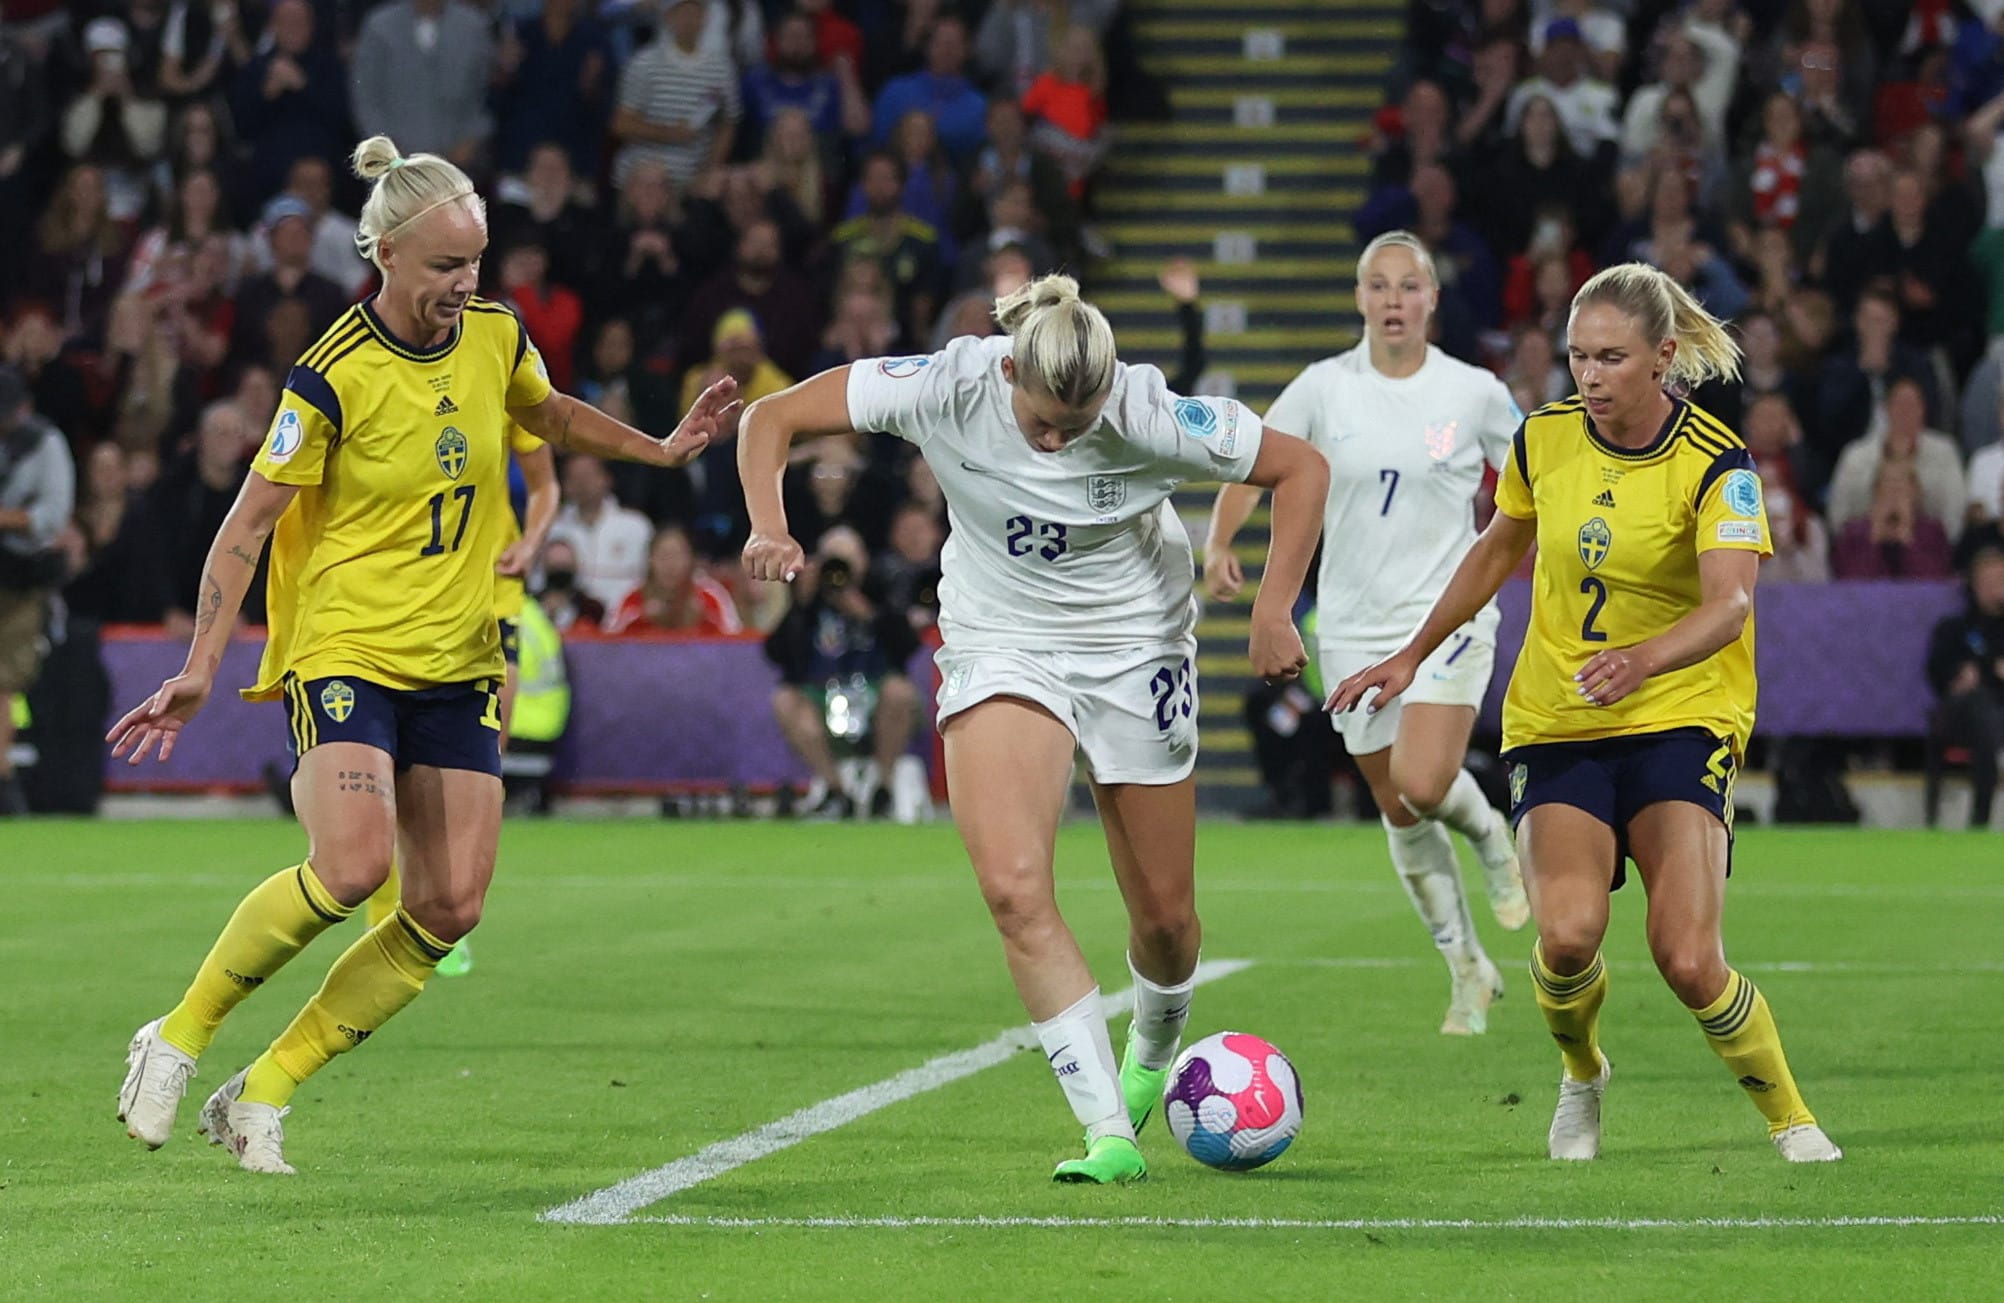 אלסיה רוסו, שחקנית נבחרת אנגליה נשים, כובשת שער עם העקב